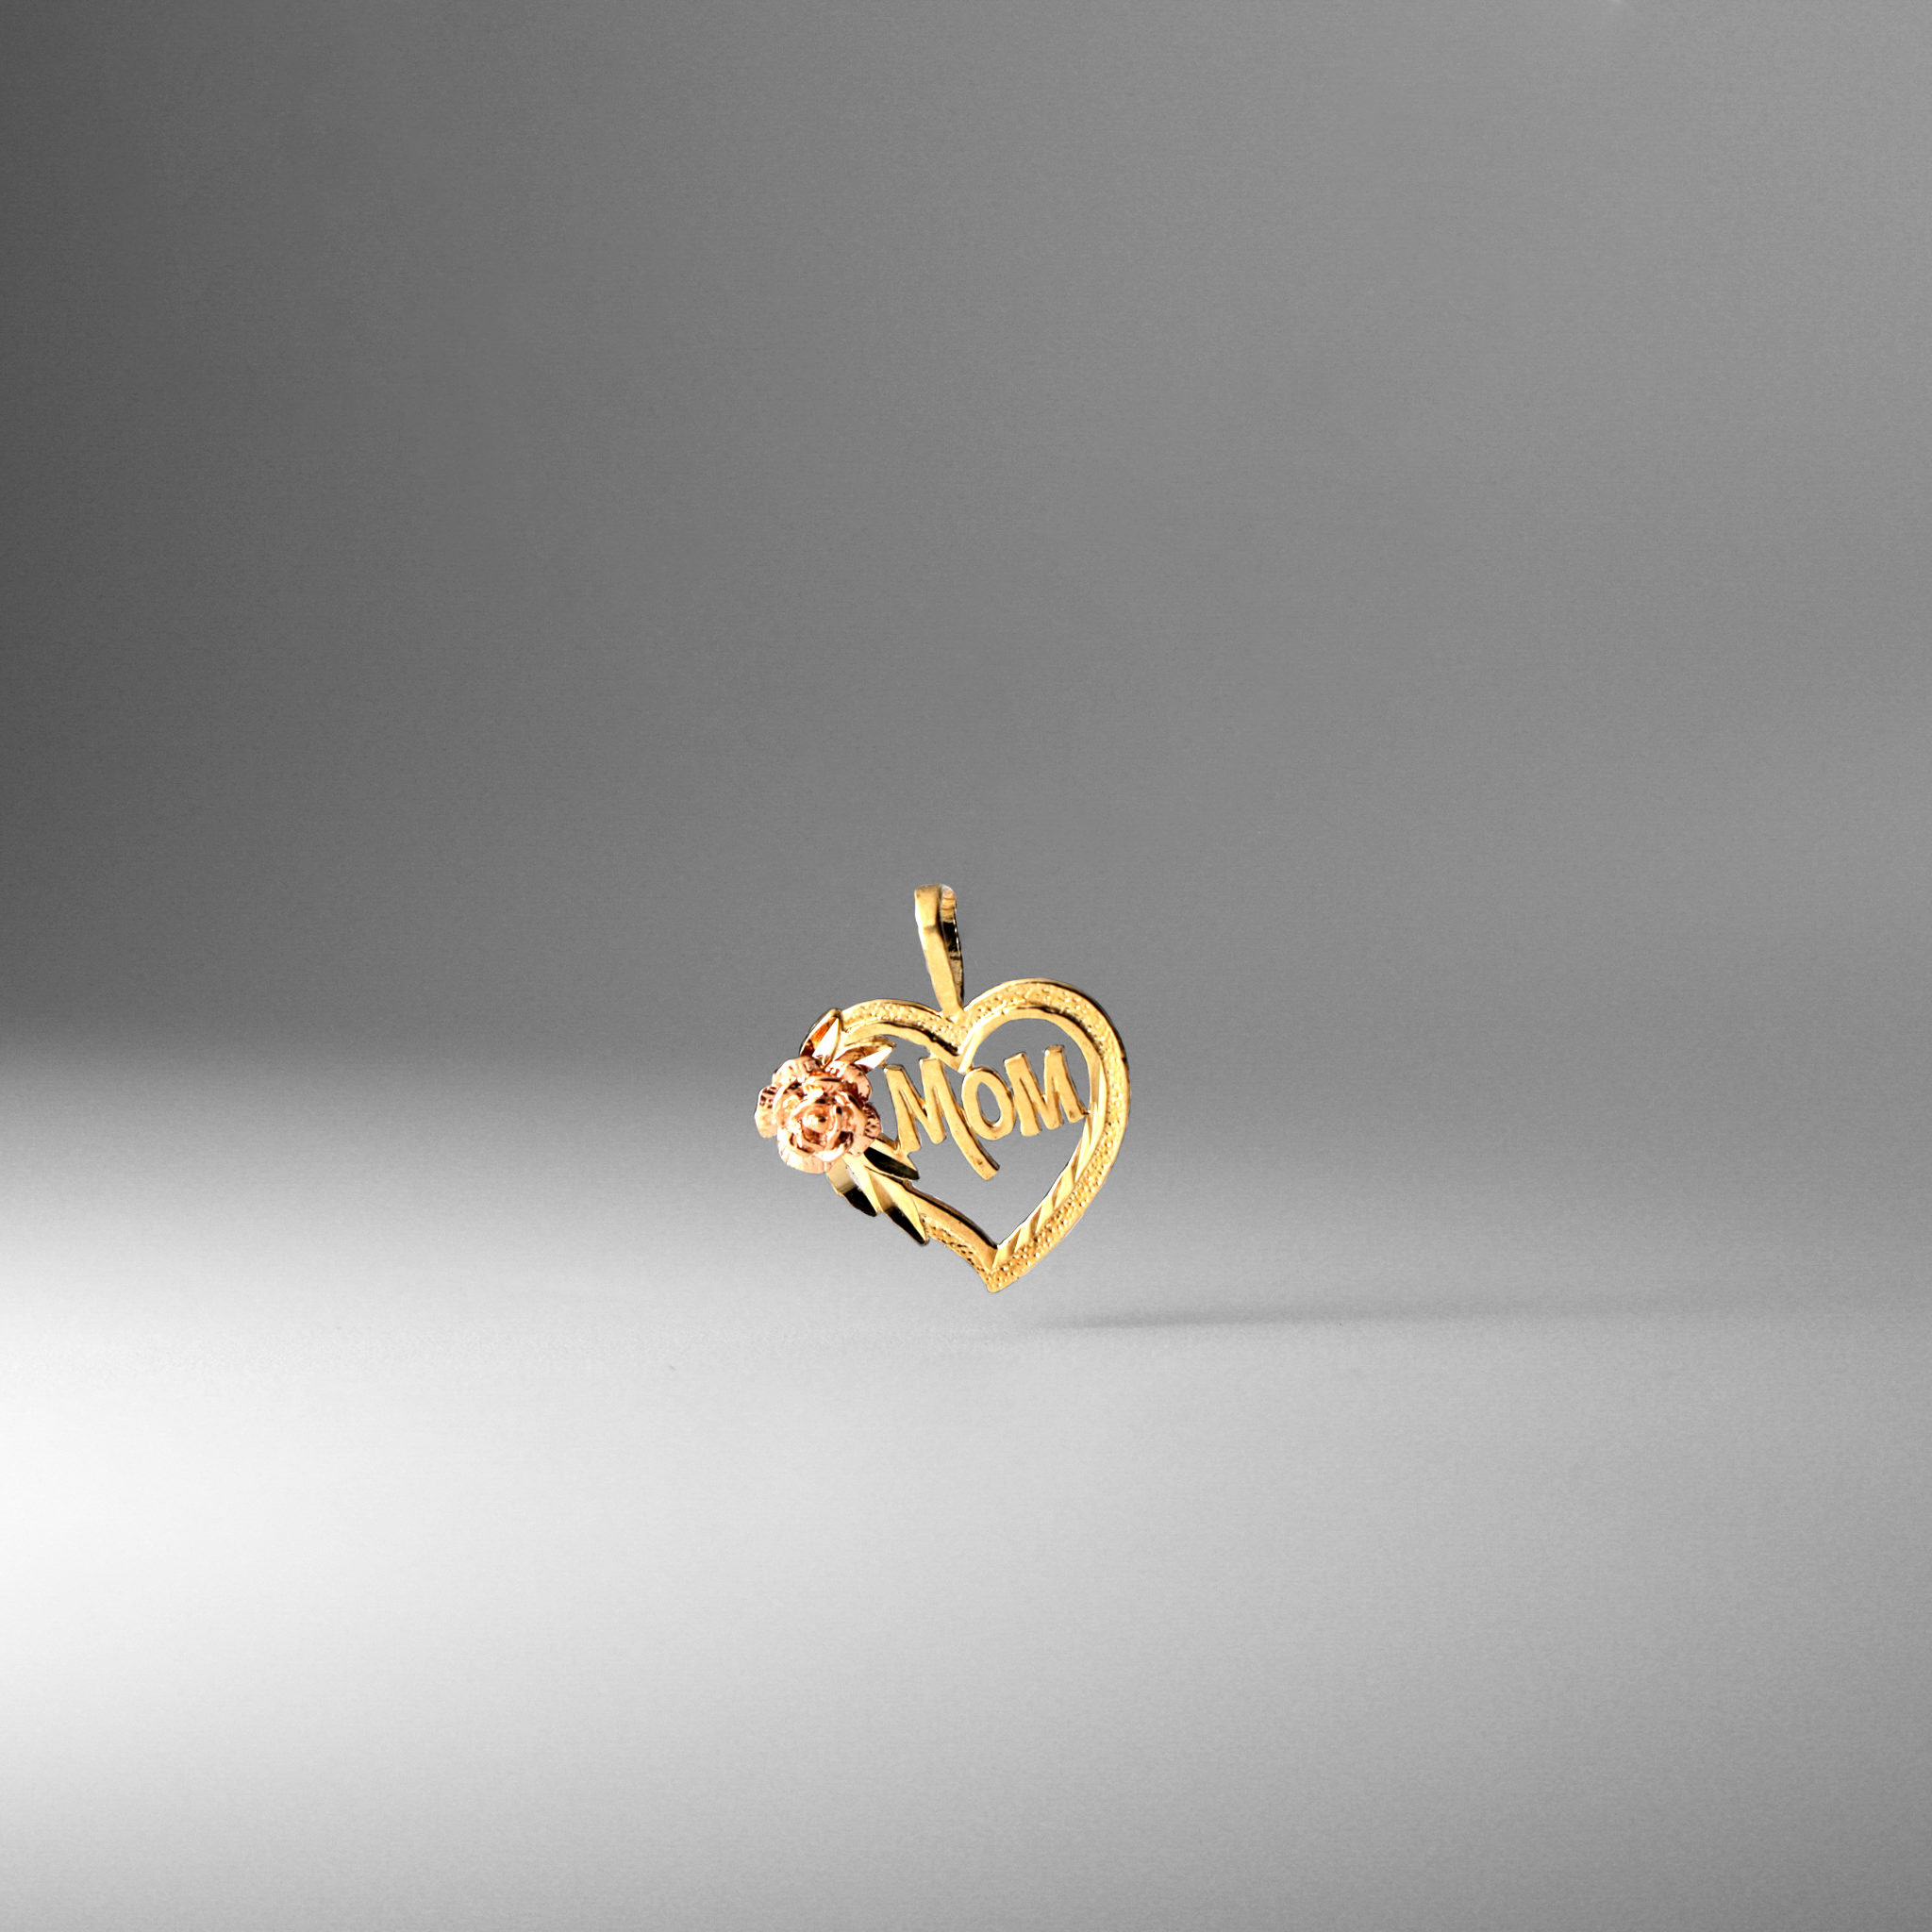 Love for Mom Gold Pendant Model-1838